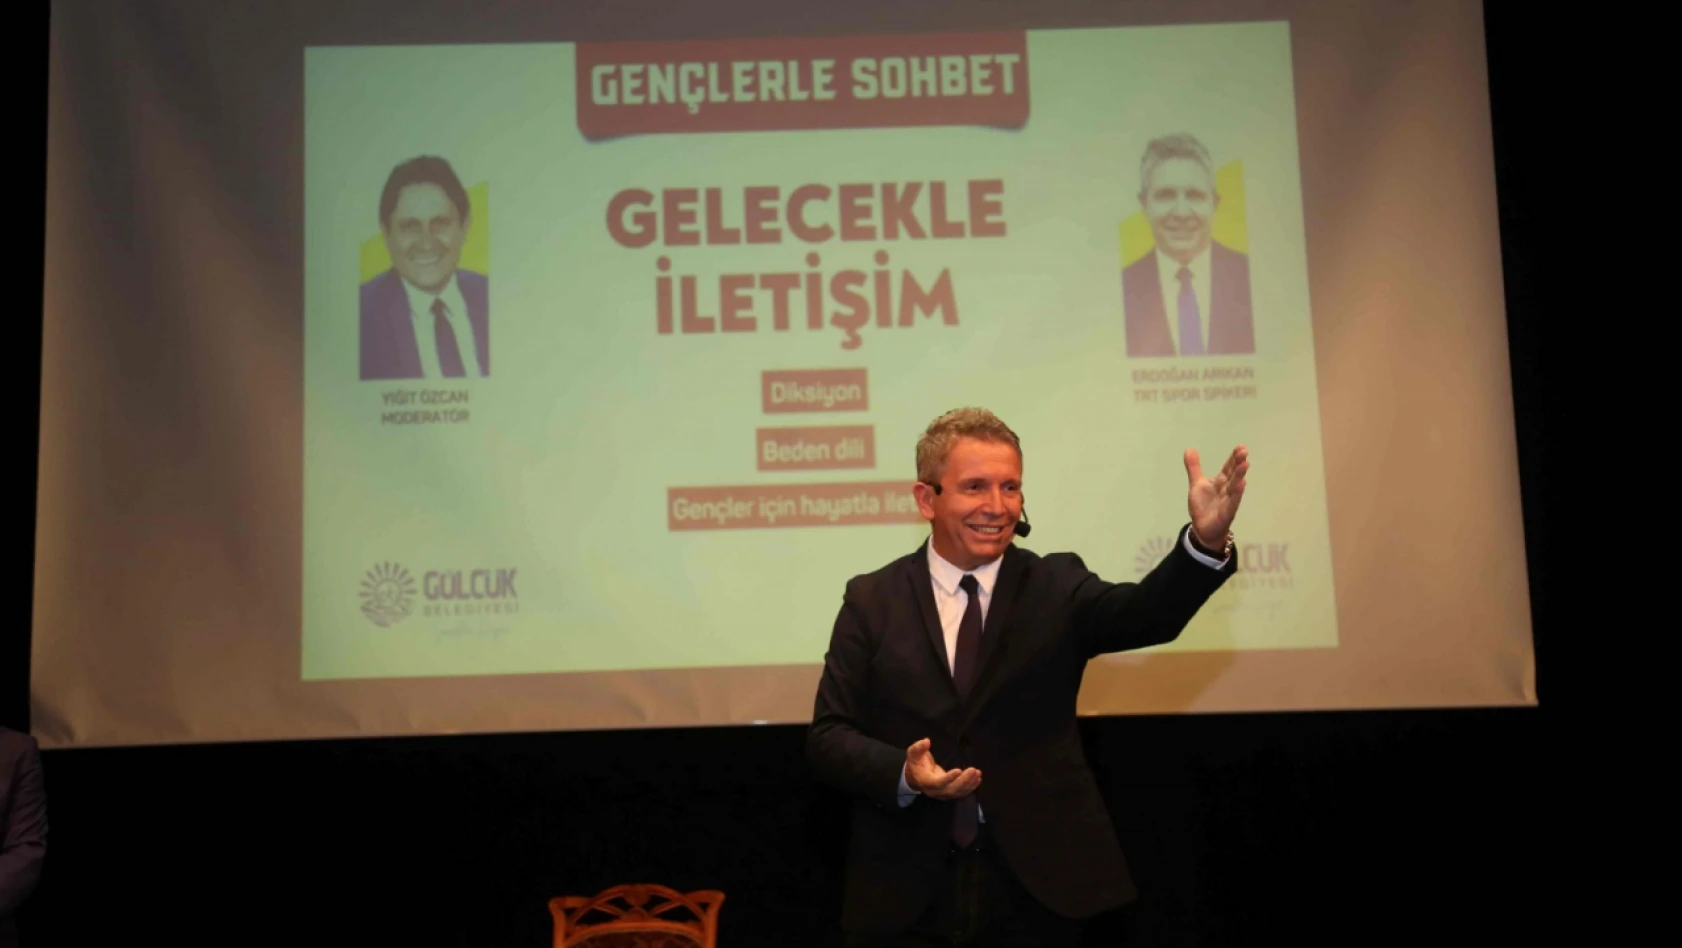 TRT Spor Spikeri Erdoğan Arıkan, gençlere tecrübelerini anlattı